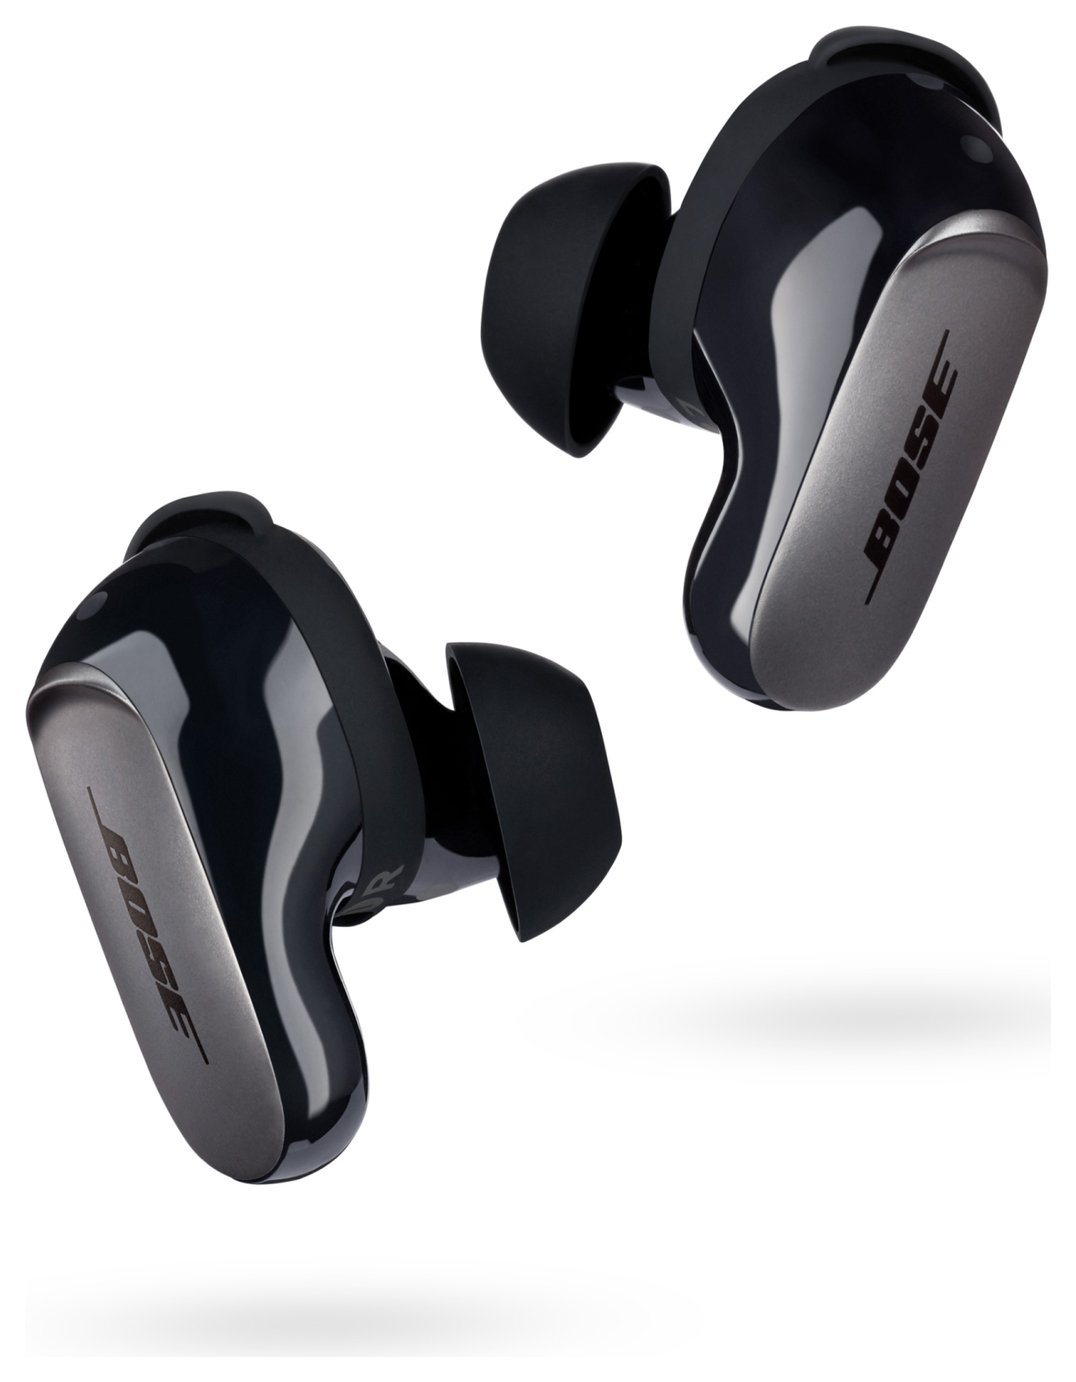 Bose QuietComfort Ultra In-Ear True Wireless Earbuds - Black